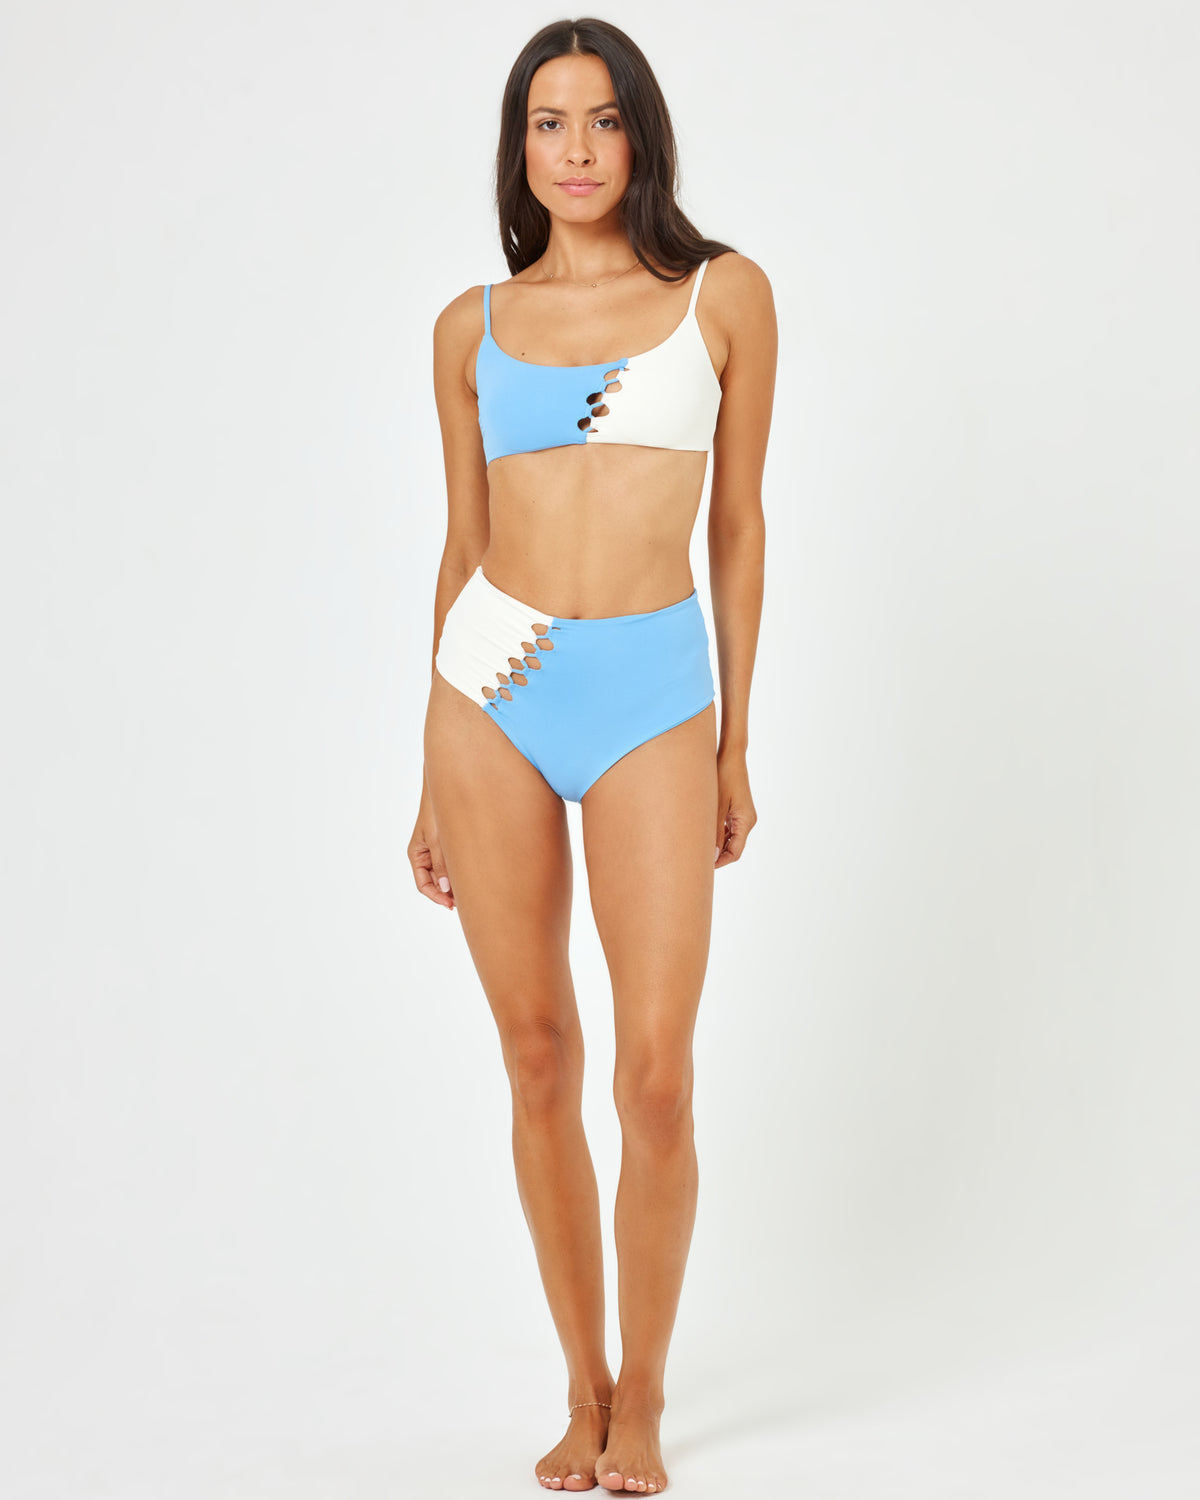 Solstice Bikini Bottom - Aura-Cream Aura-Cream | Model: Emily (size: S)